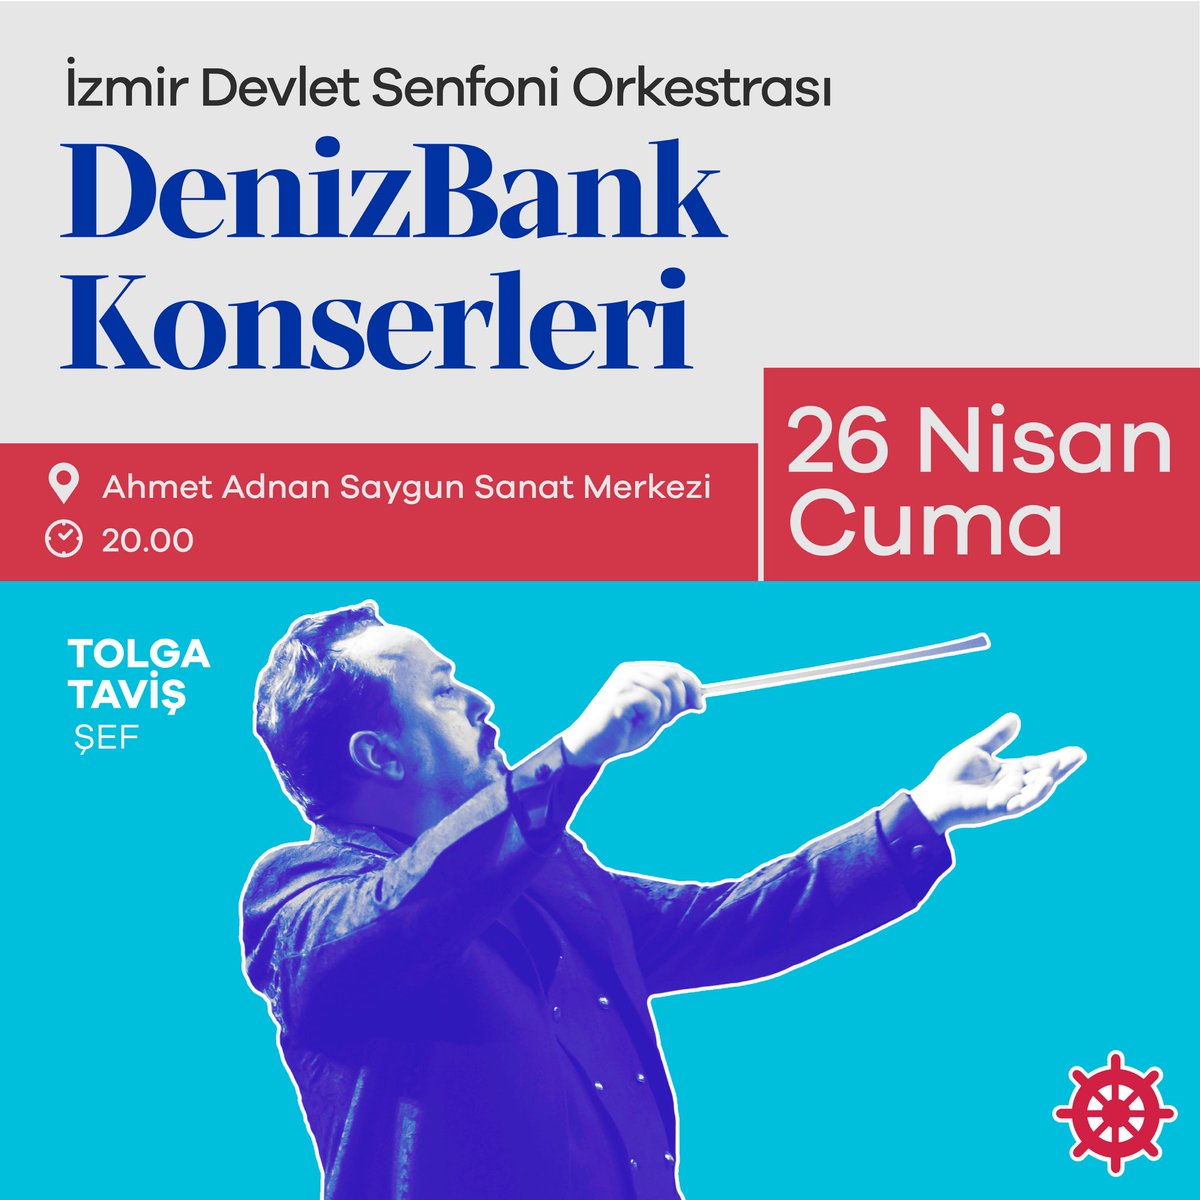 İzmir Devlet Senfoni Orkestrası DenizBank Konserleri, 23 Nisan Ulusal Egemenlik ve Çocuk Bayramı konseri ile devam ediyor! ✨ Bu unutulmaz konsere tüm sanatseverler davetlidir! #SanataDesteğinİlerisiDeniz #DenizBank #İZDSO #DenizKültür